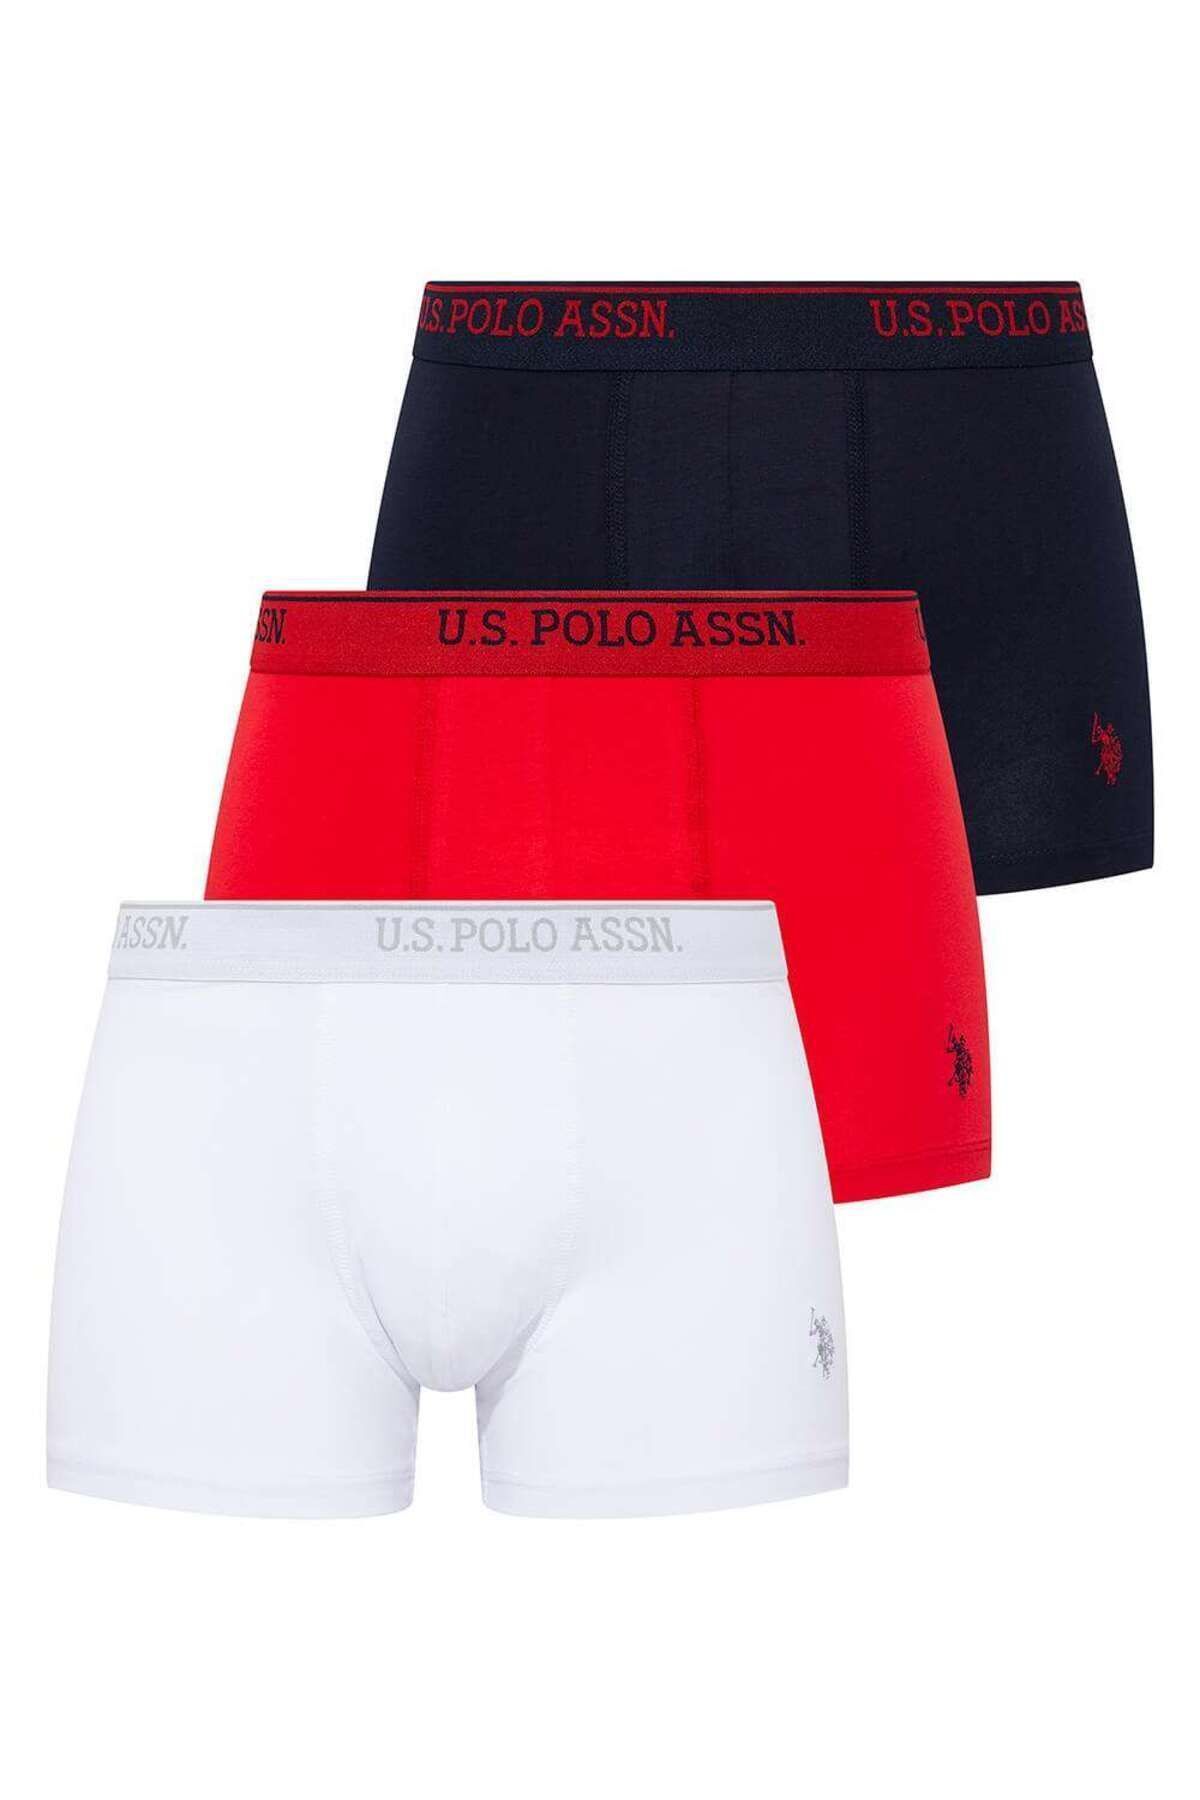 U.S. Polo Assn. Erkek Beyaz - Kırmızı - Lacivert 3 Lü Boxer 80097